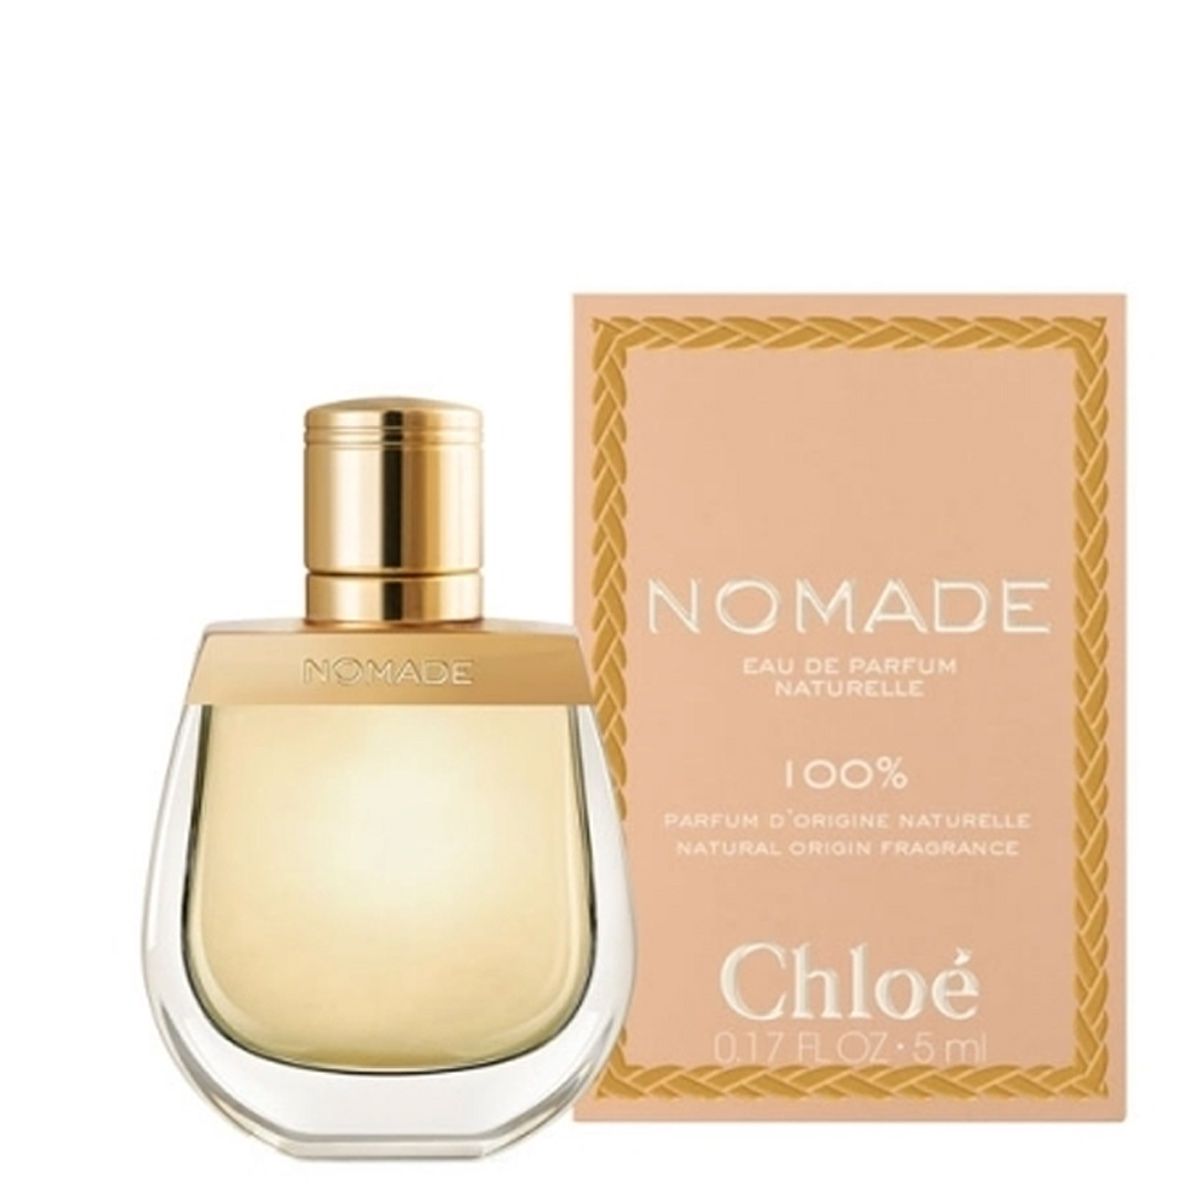  Chloe Nomade Naturelle Eau de Parfum Mini Size 